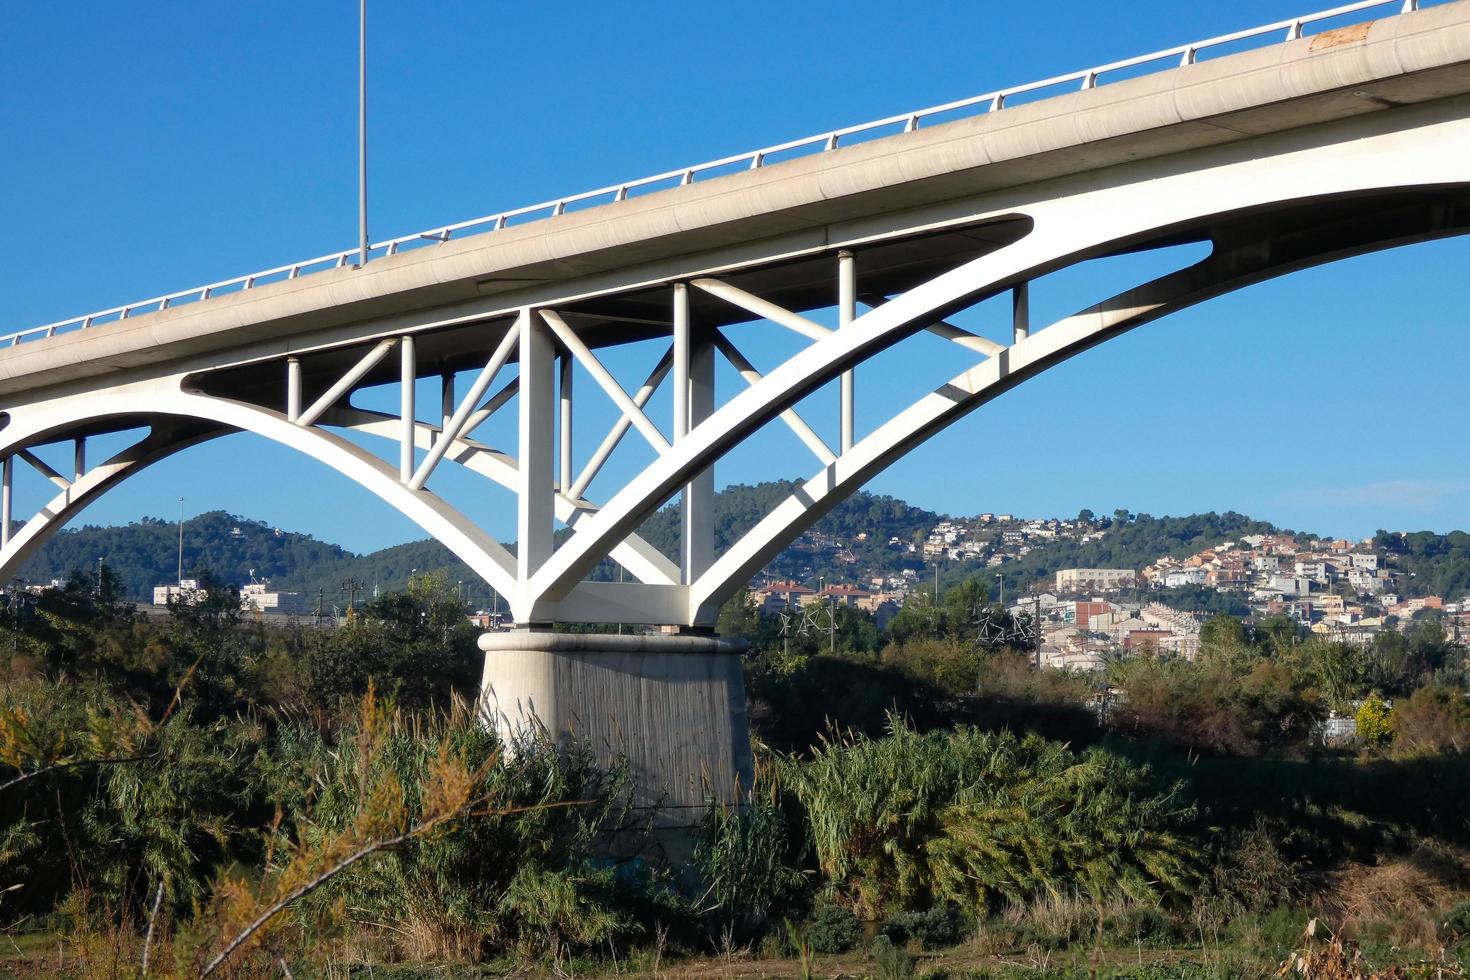 ponte moderna sobre um rio, uma façanha da engenharia foto